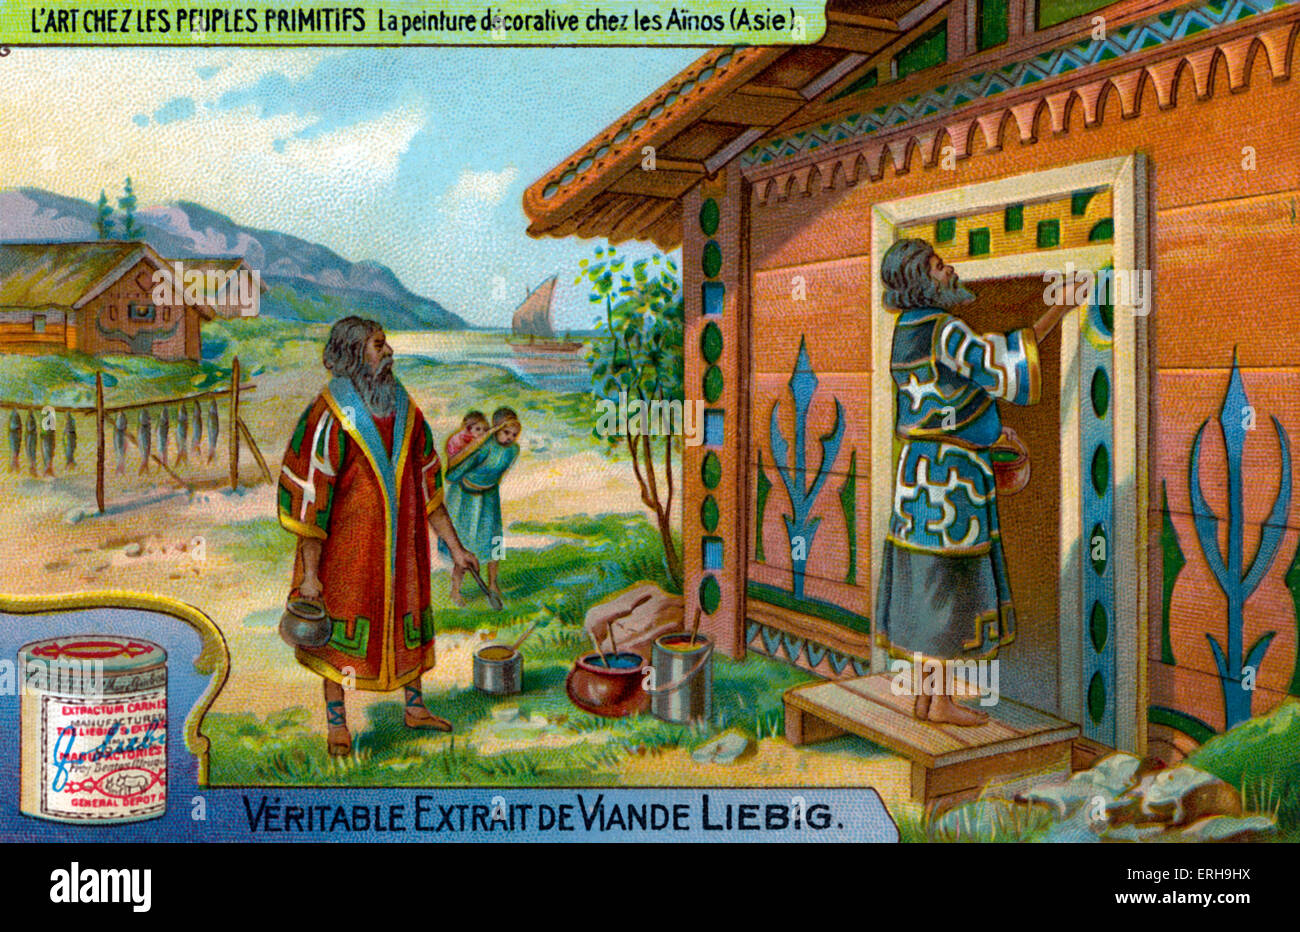 Ainu Dekorationsmalerei. Indigene Gruppen in Japan und Russland. Abbildung auf Liebig Sammelkartenspiel (Französisch Serie: "L'Art Stockfoto